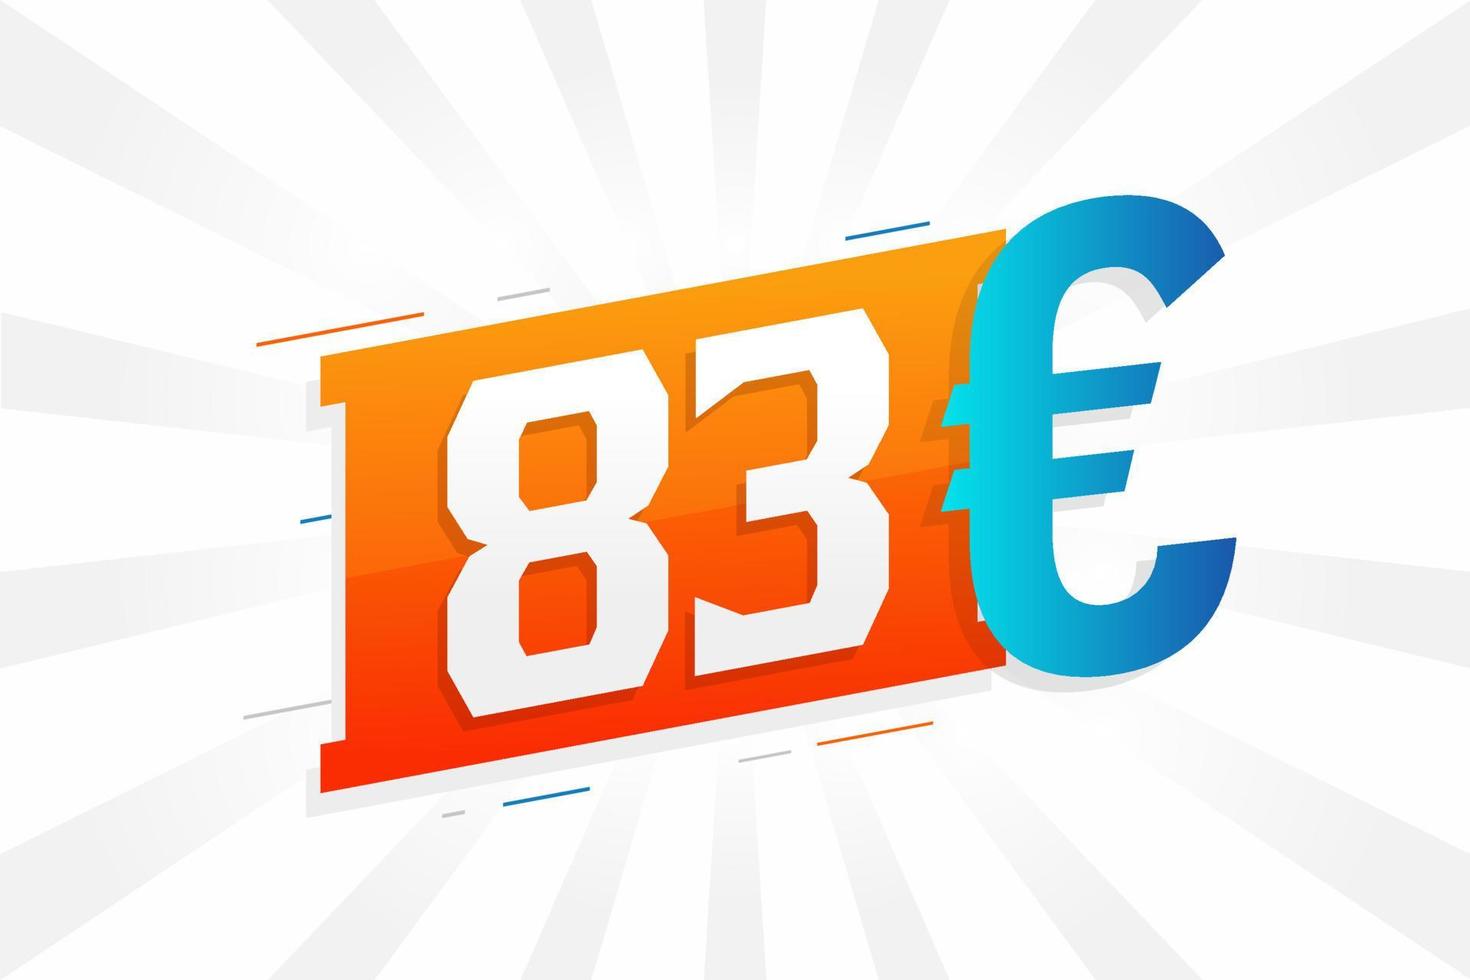 83-Euro-Währungsvektor-Textsymbol. 83 euro geldstockvektor der europäischen union vektor